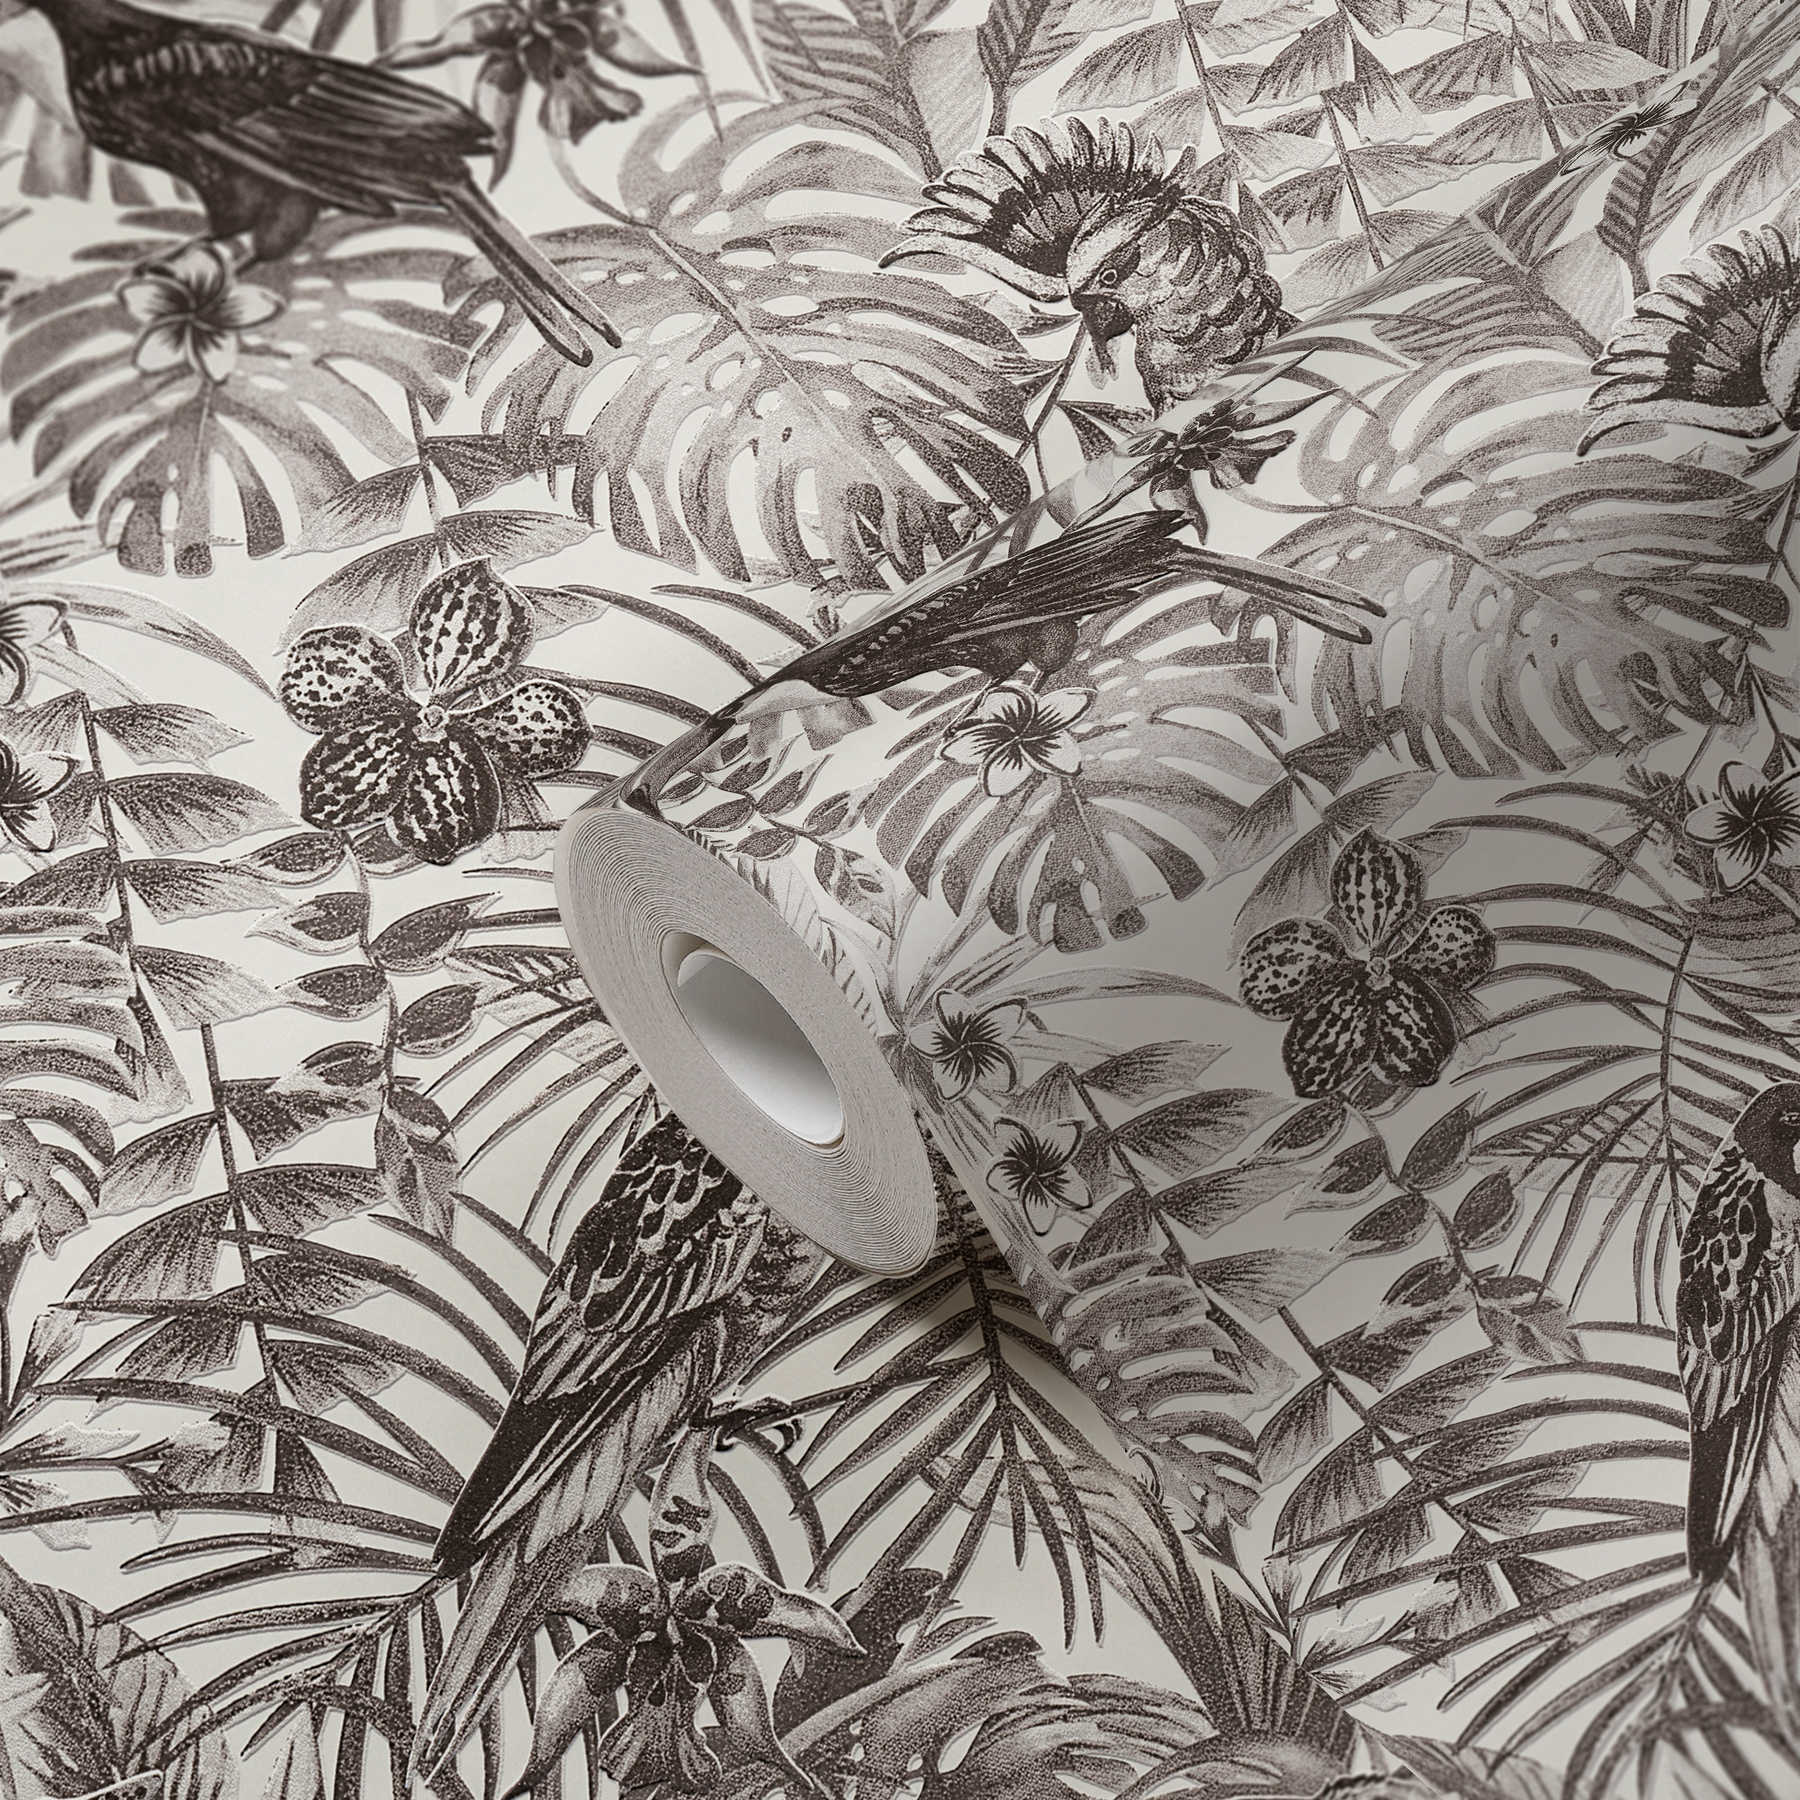             Exotische Tapete tropischen Vögel, Blüten & Blätter – Schwarz, Weiß, Grau
        